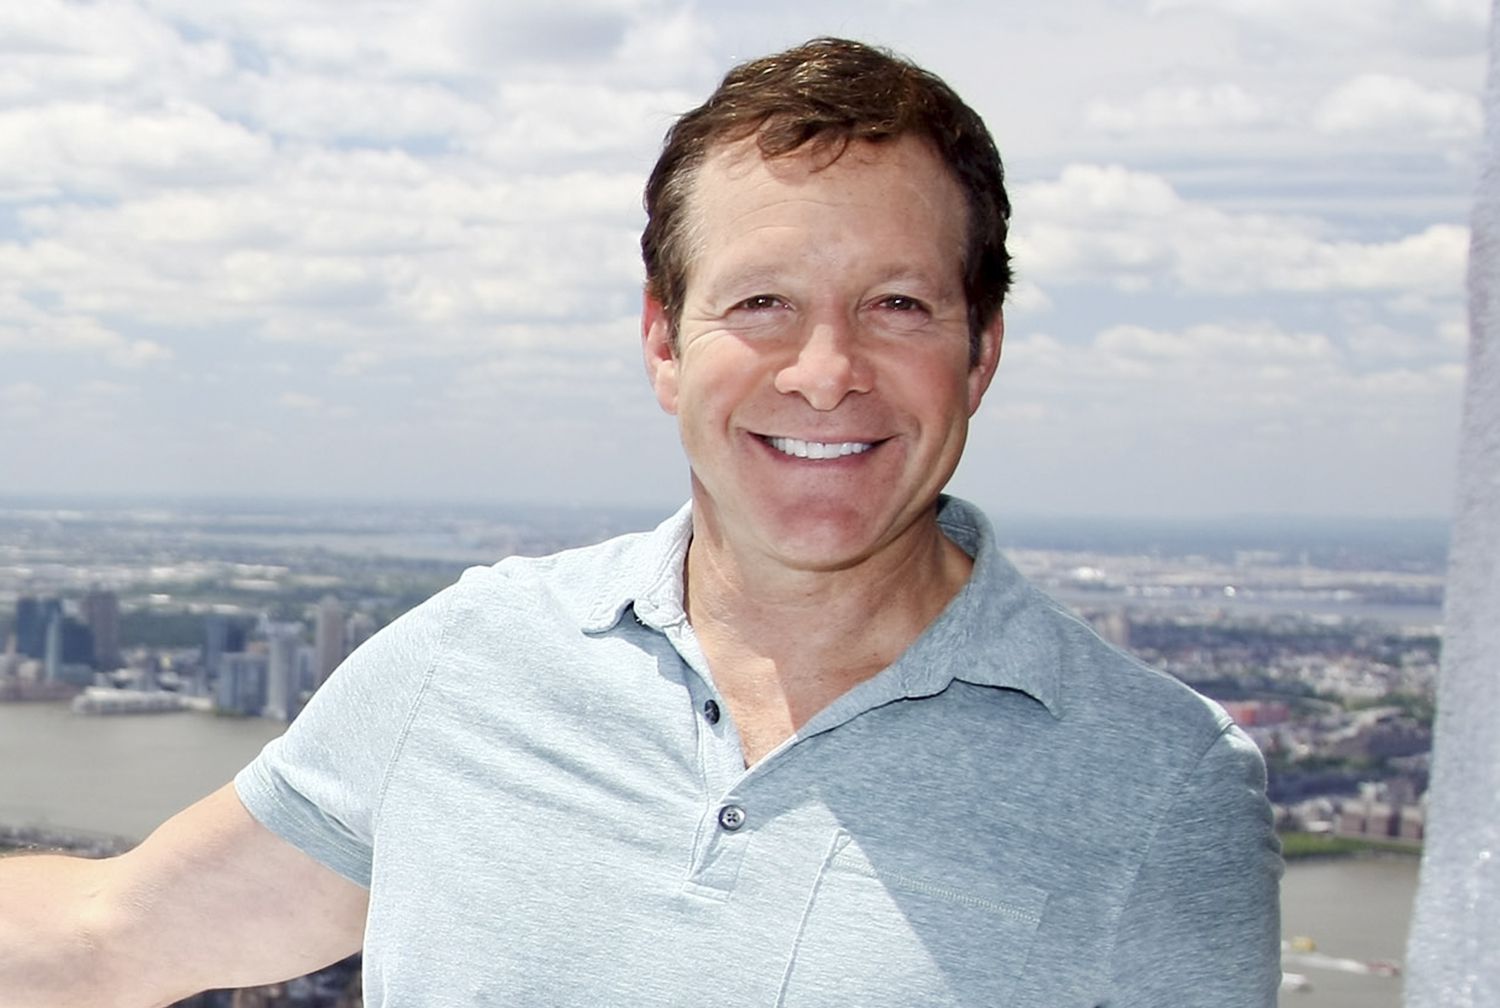 Steve Guttenberg smiling